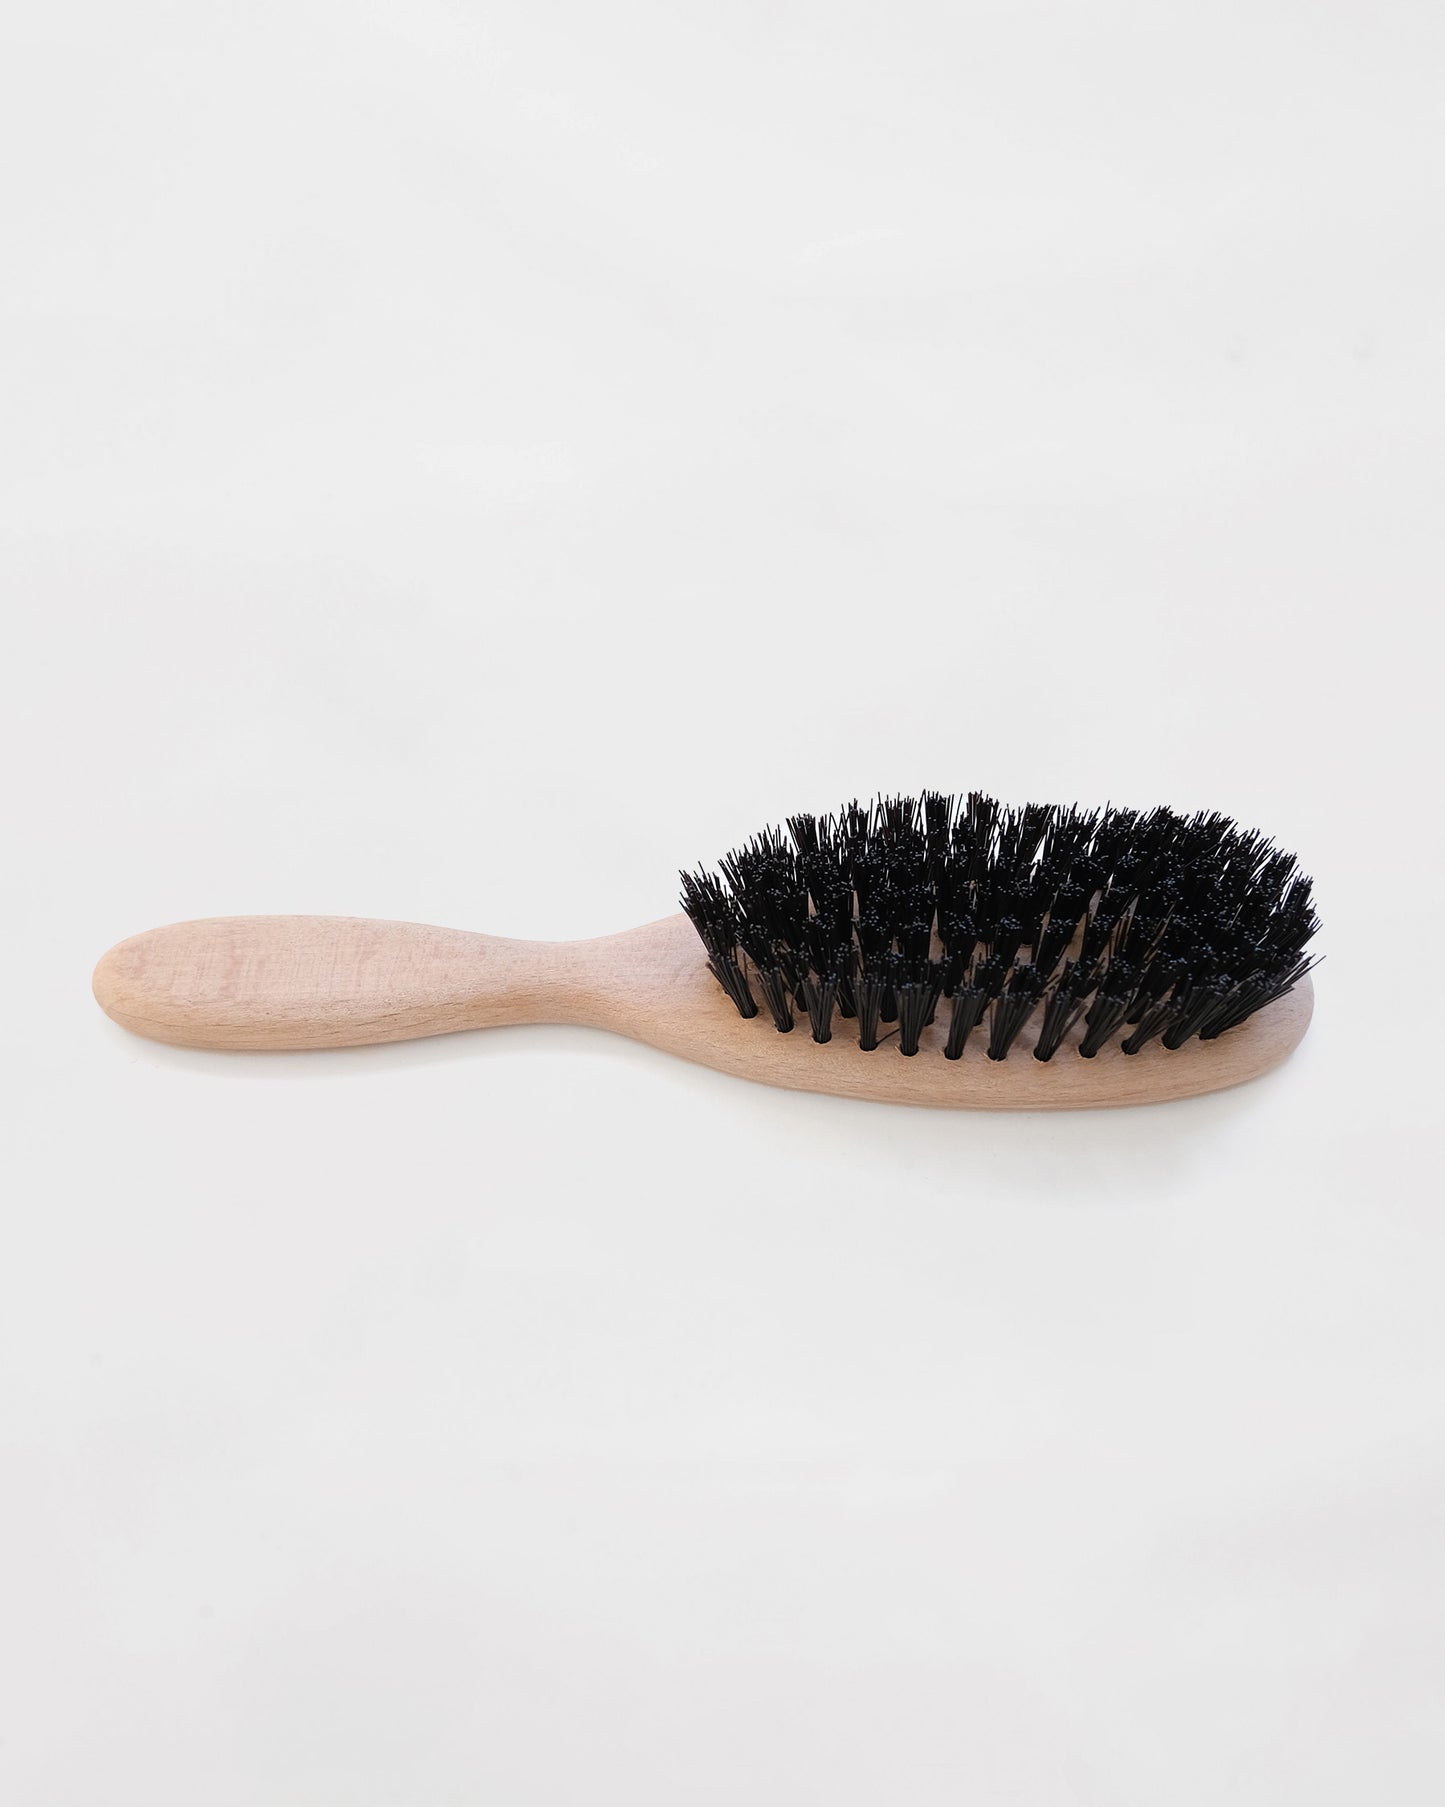 N.O.S Hair Brush